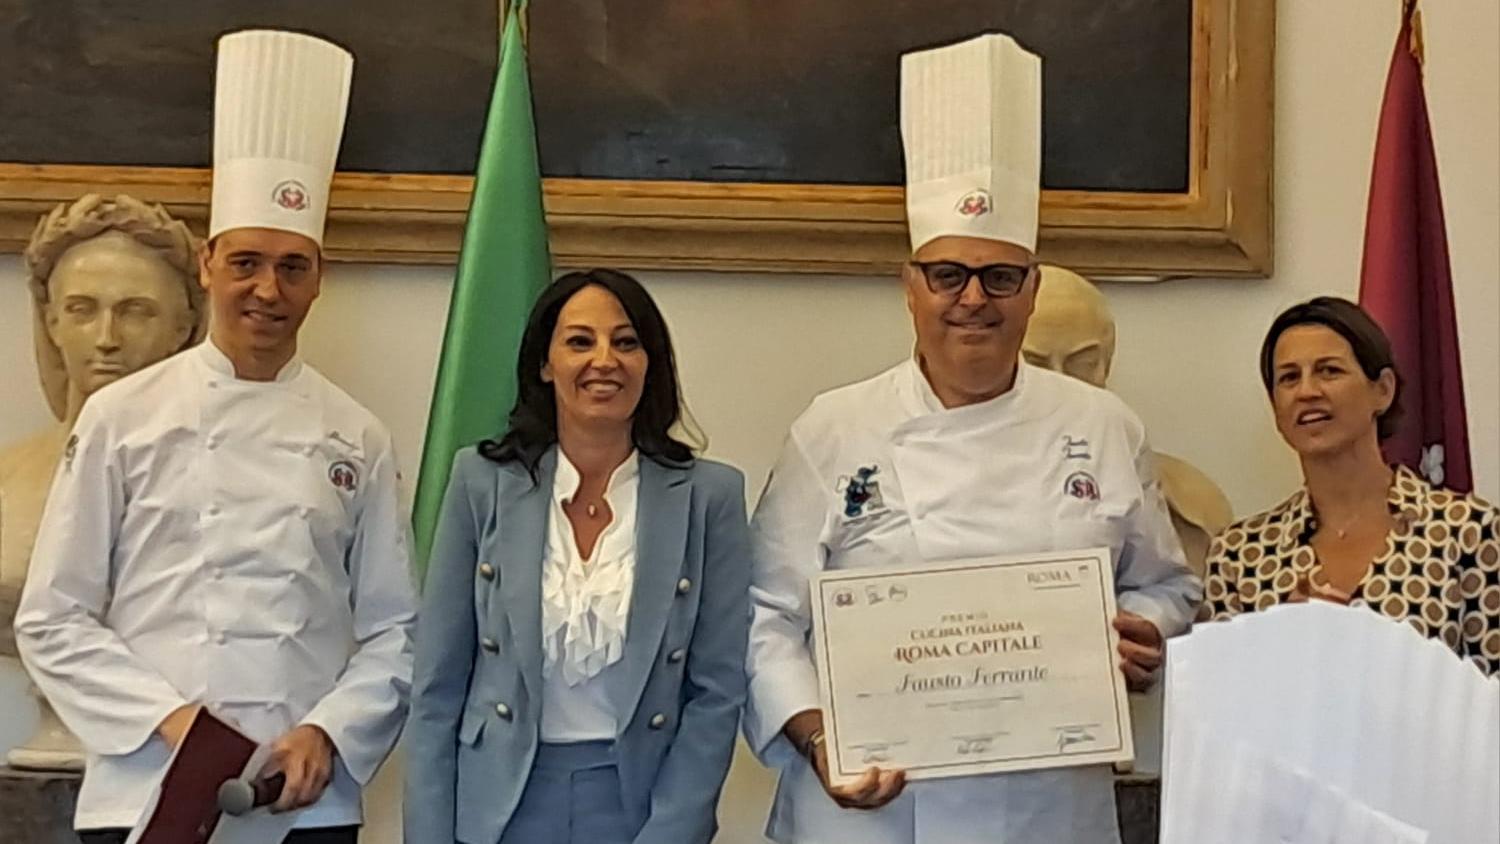 Featured image for “Celebrazione della Cucina Italiana per Roma Capitale”